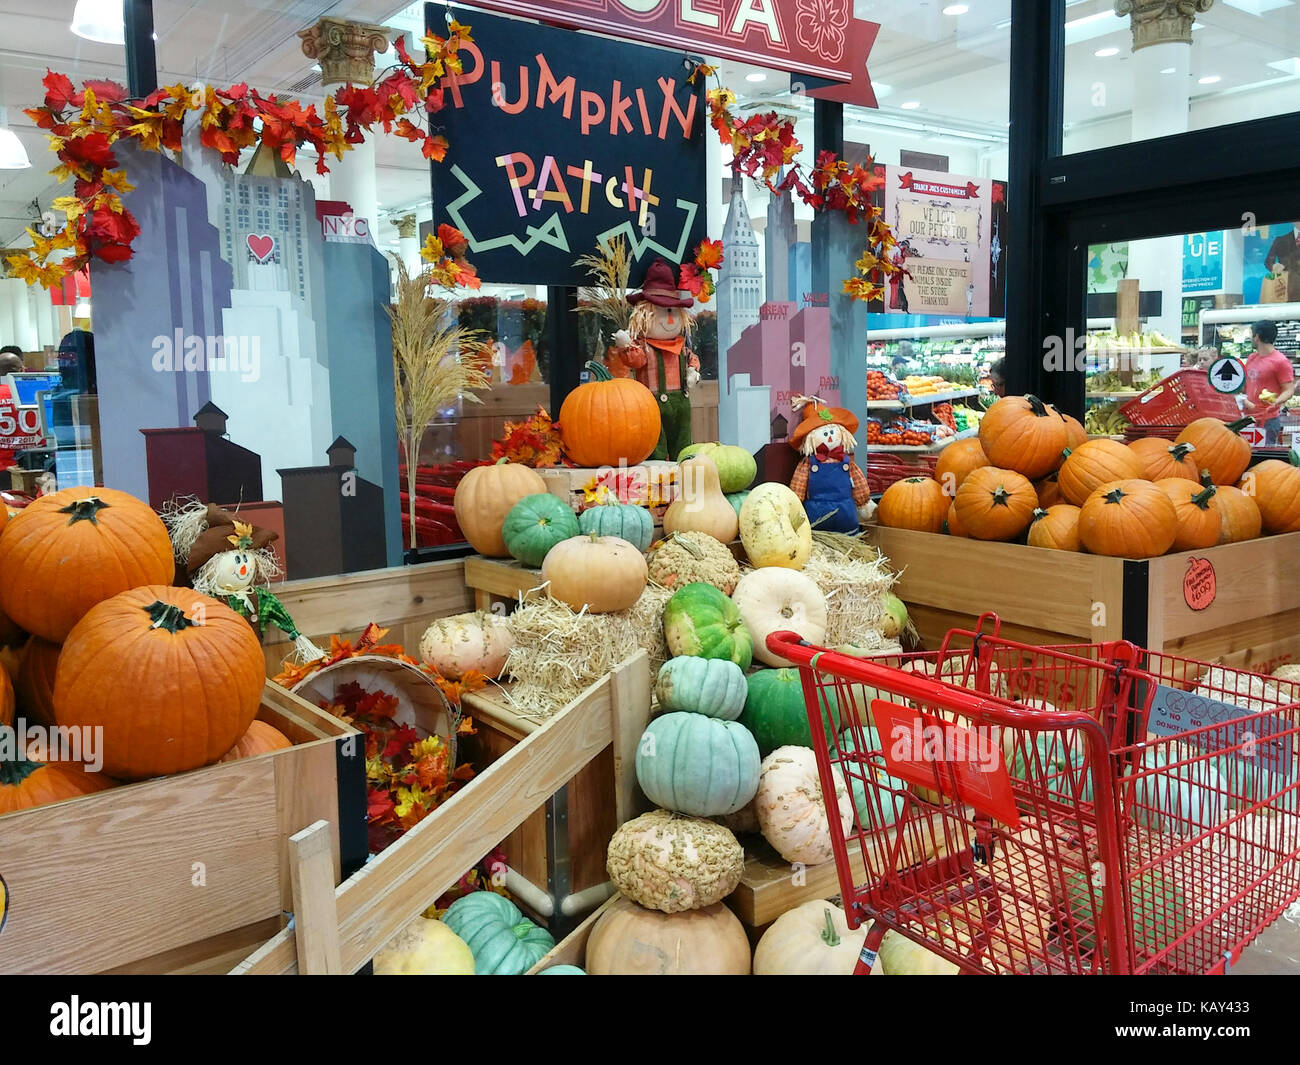 Affichage de citrouille dans un supermarché Trader Joe's à New York le dimanche 17 septembre, 2017. Les supermarchés, épiceries et les fabricants d'aliments ont adapté jusqu'à l'assaut des saisonniers pumpkin obsédé consommateurs. (© richard b. levine) Banque D'Images